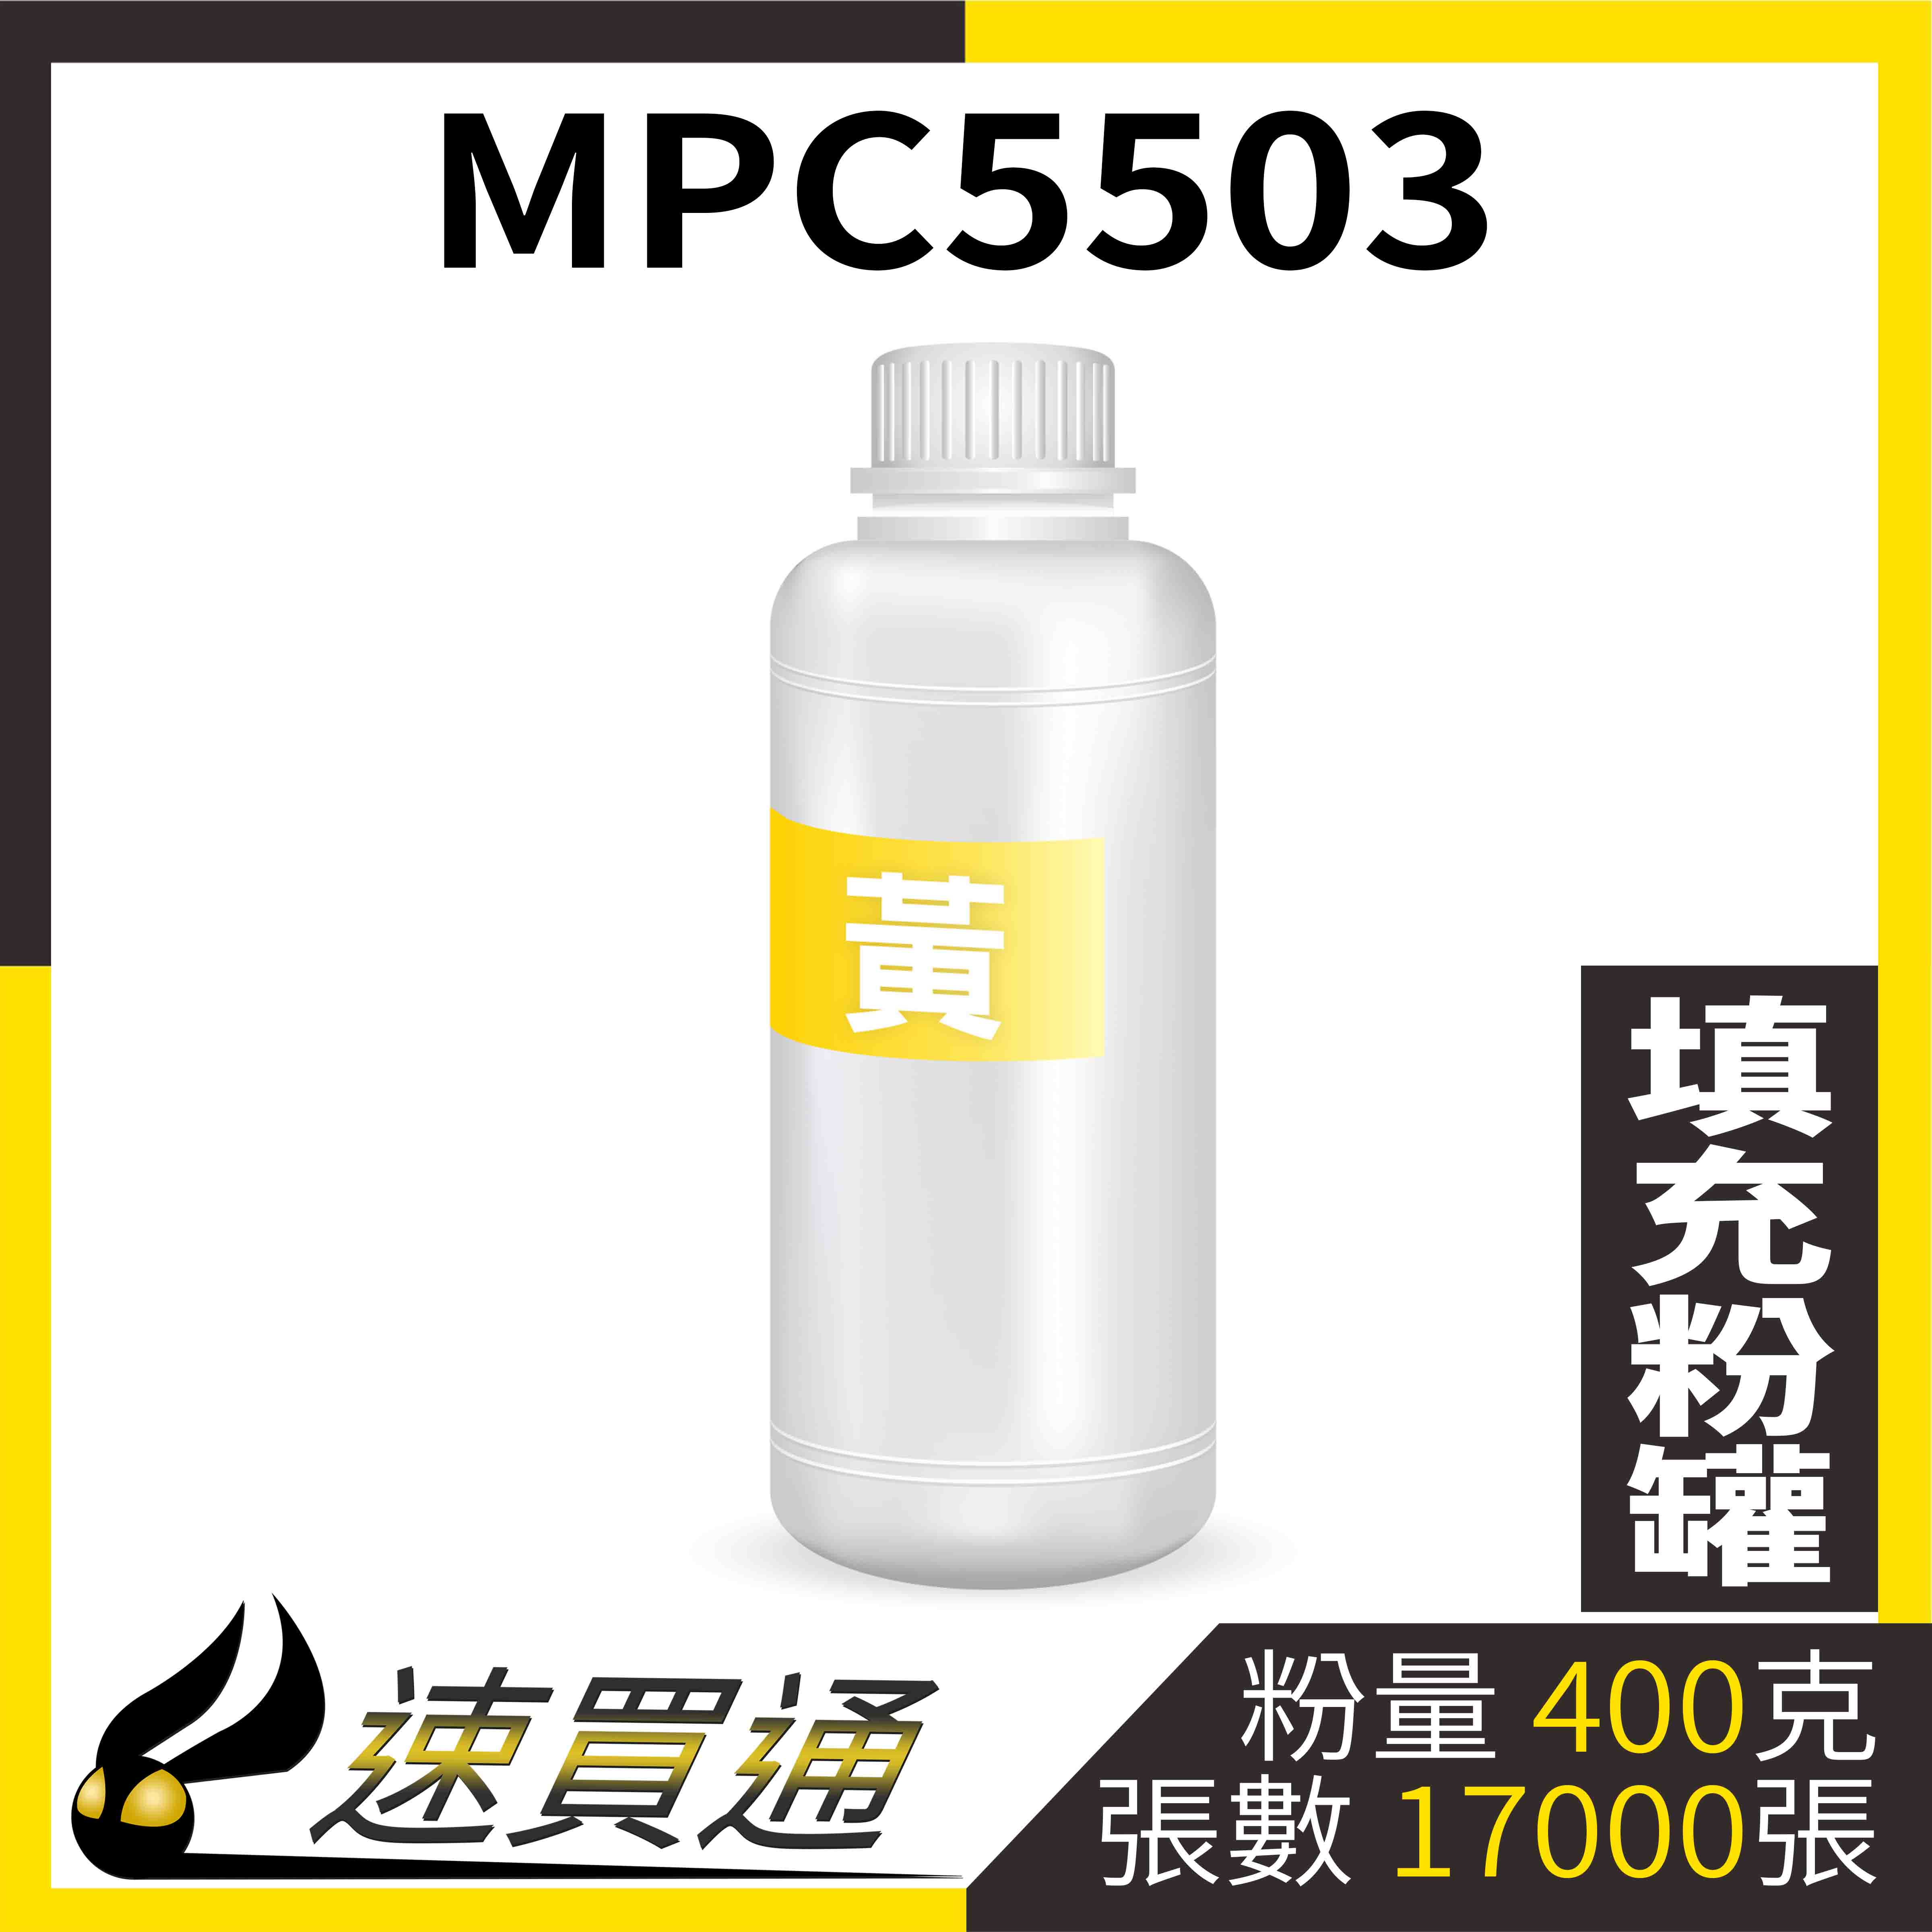 【速買通】RICOH MPC5503 黃 填充式碳粉罐